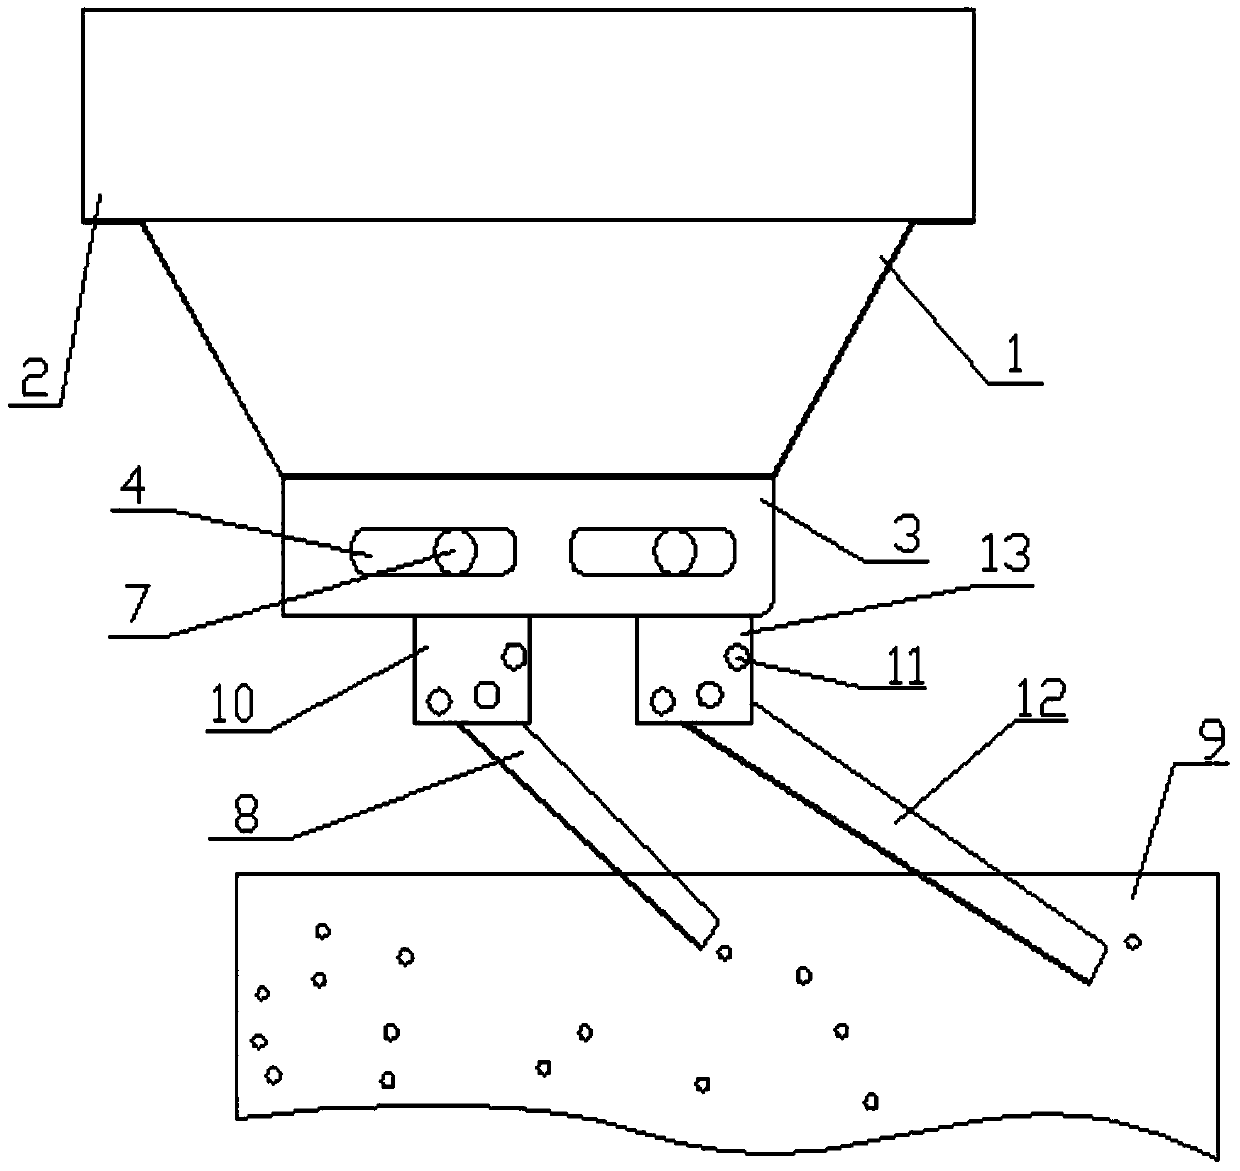 A uniform material distribution mechanism on an induced hoist